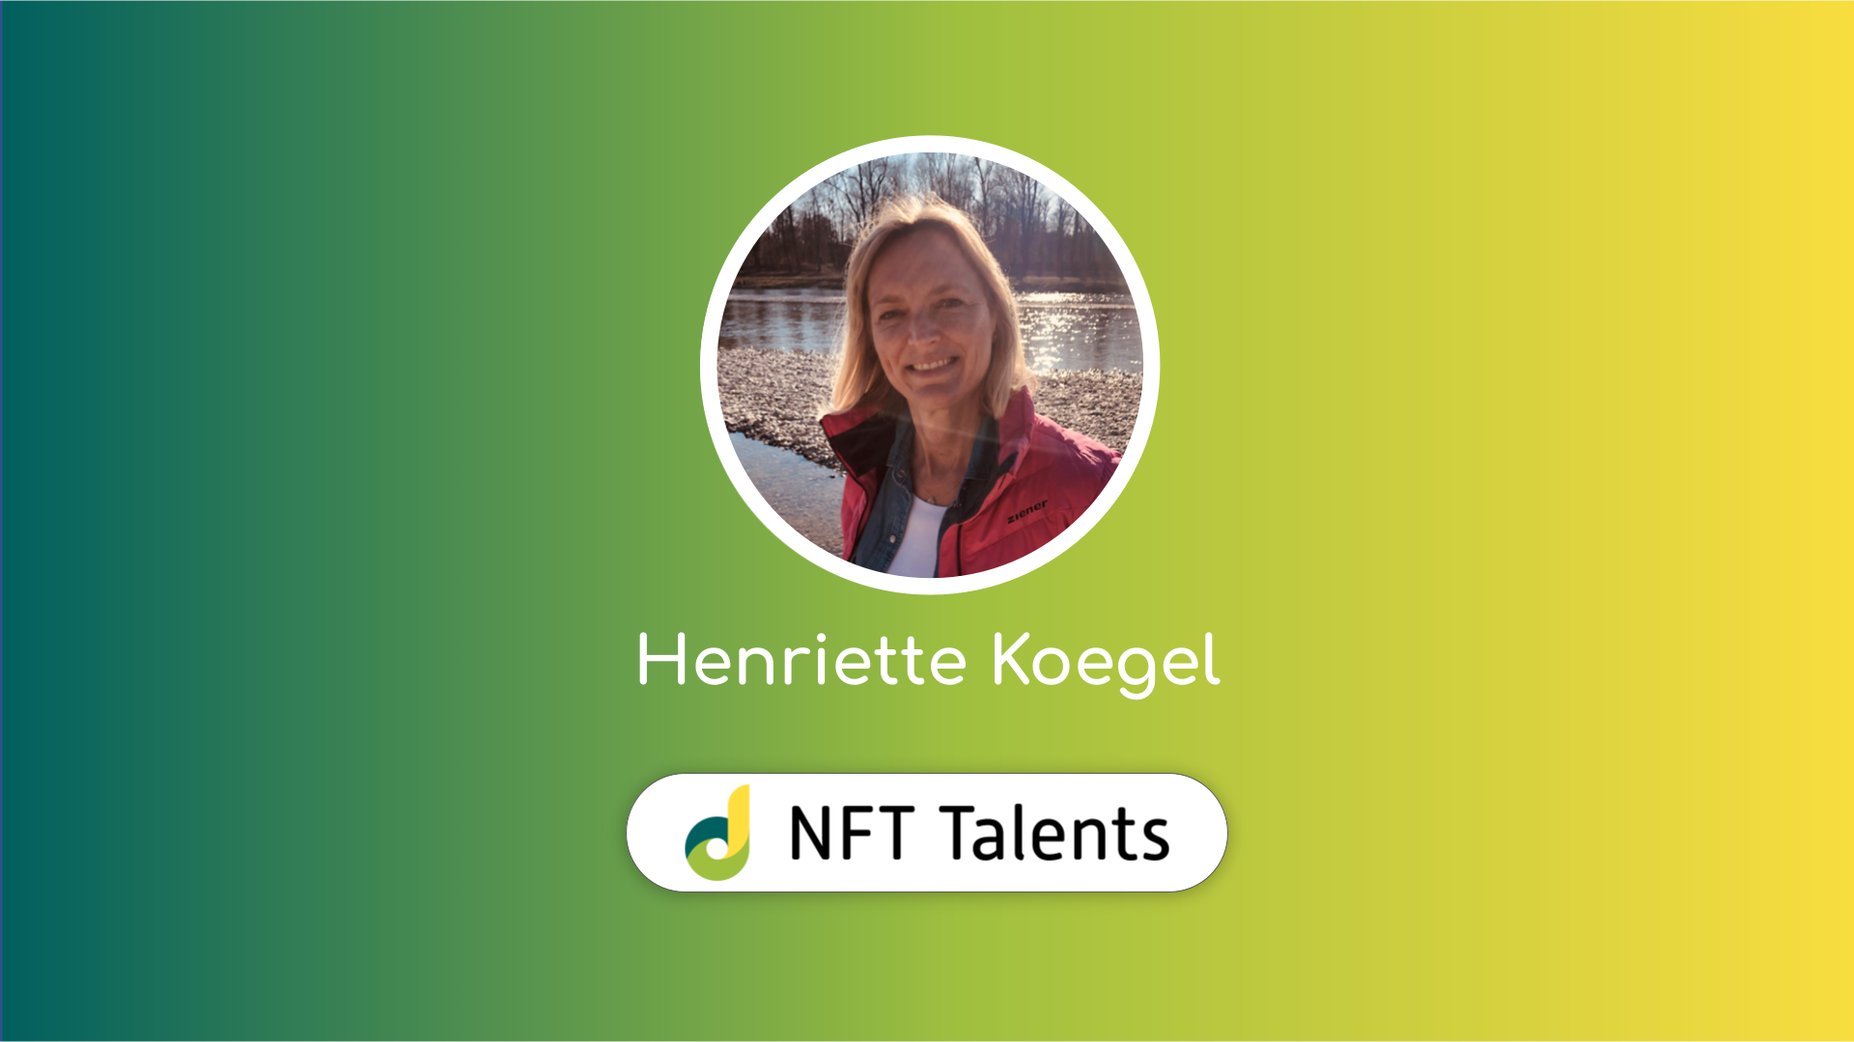 NFT Talents Mentor – Henriette Koegel